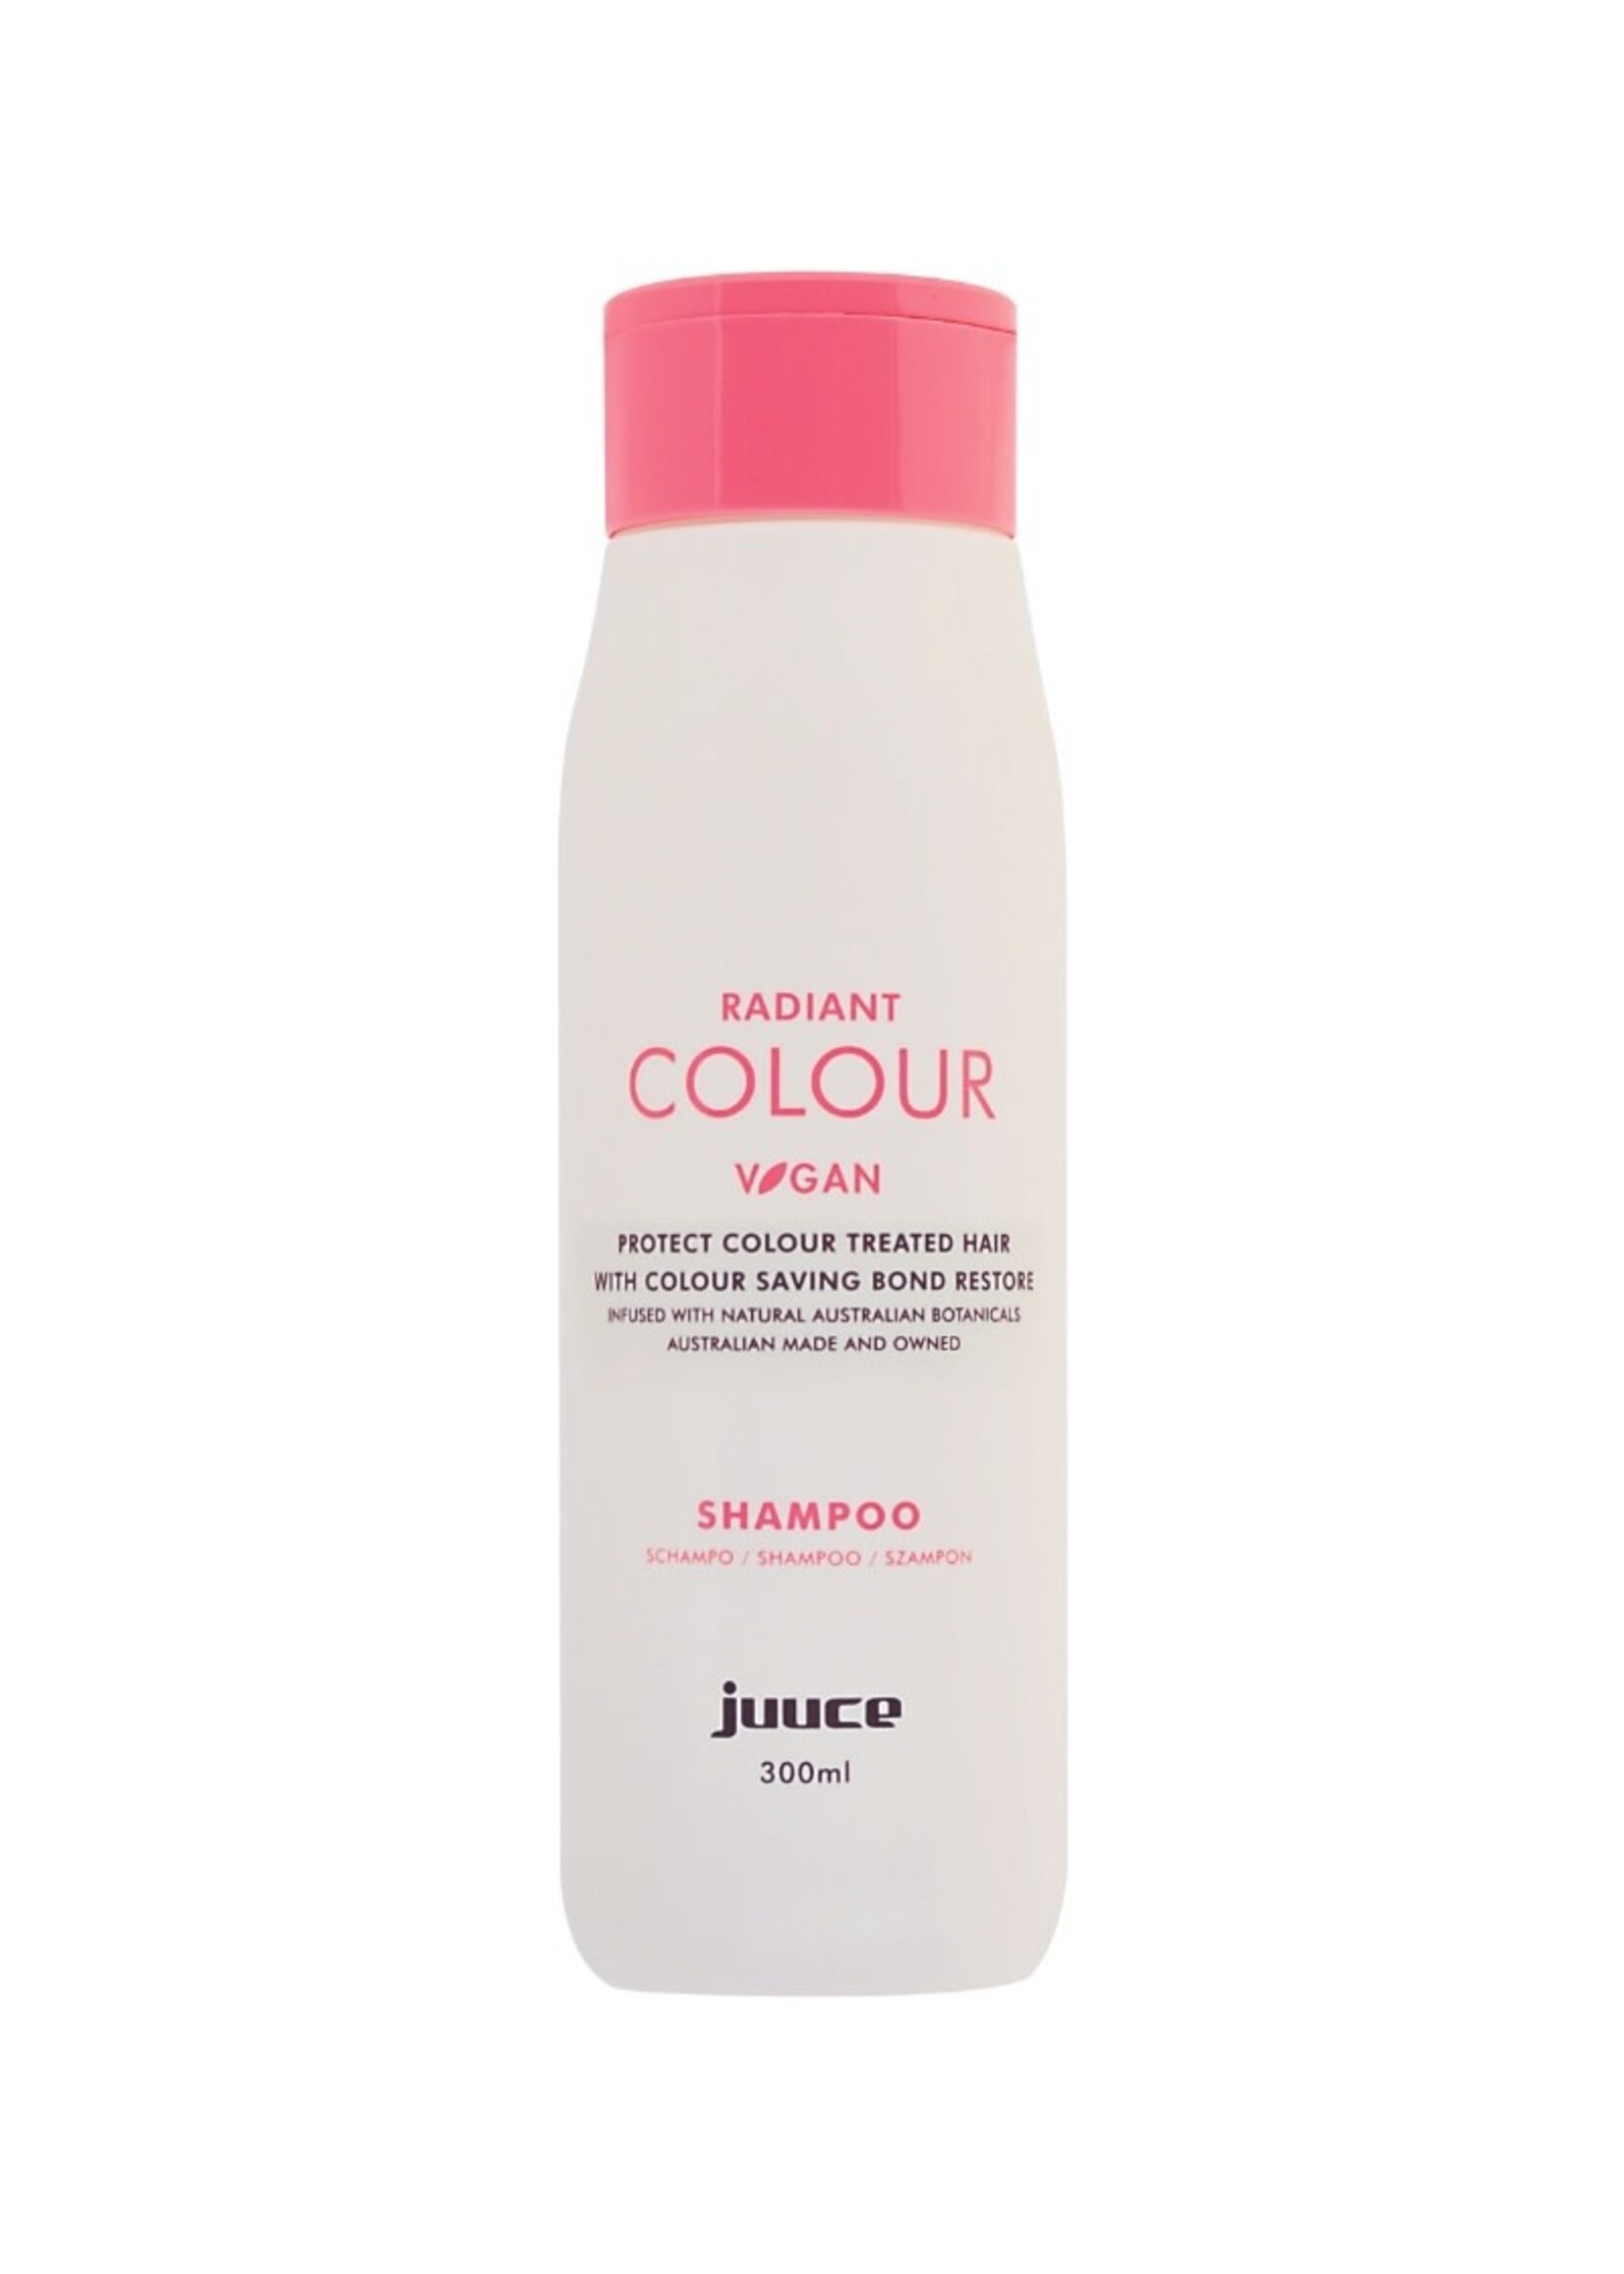 Juuce Juuce Radiant Colour Shampoo 300ml